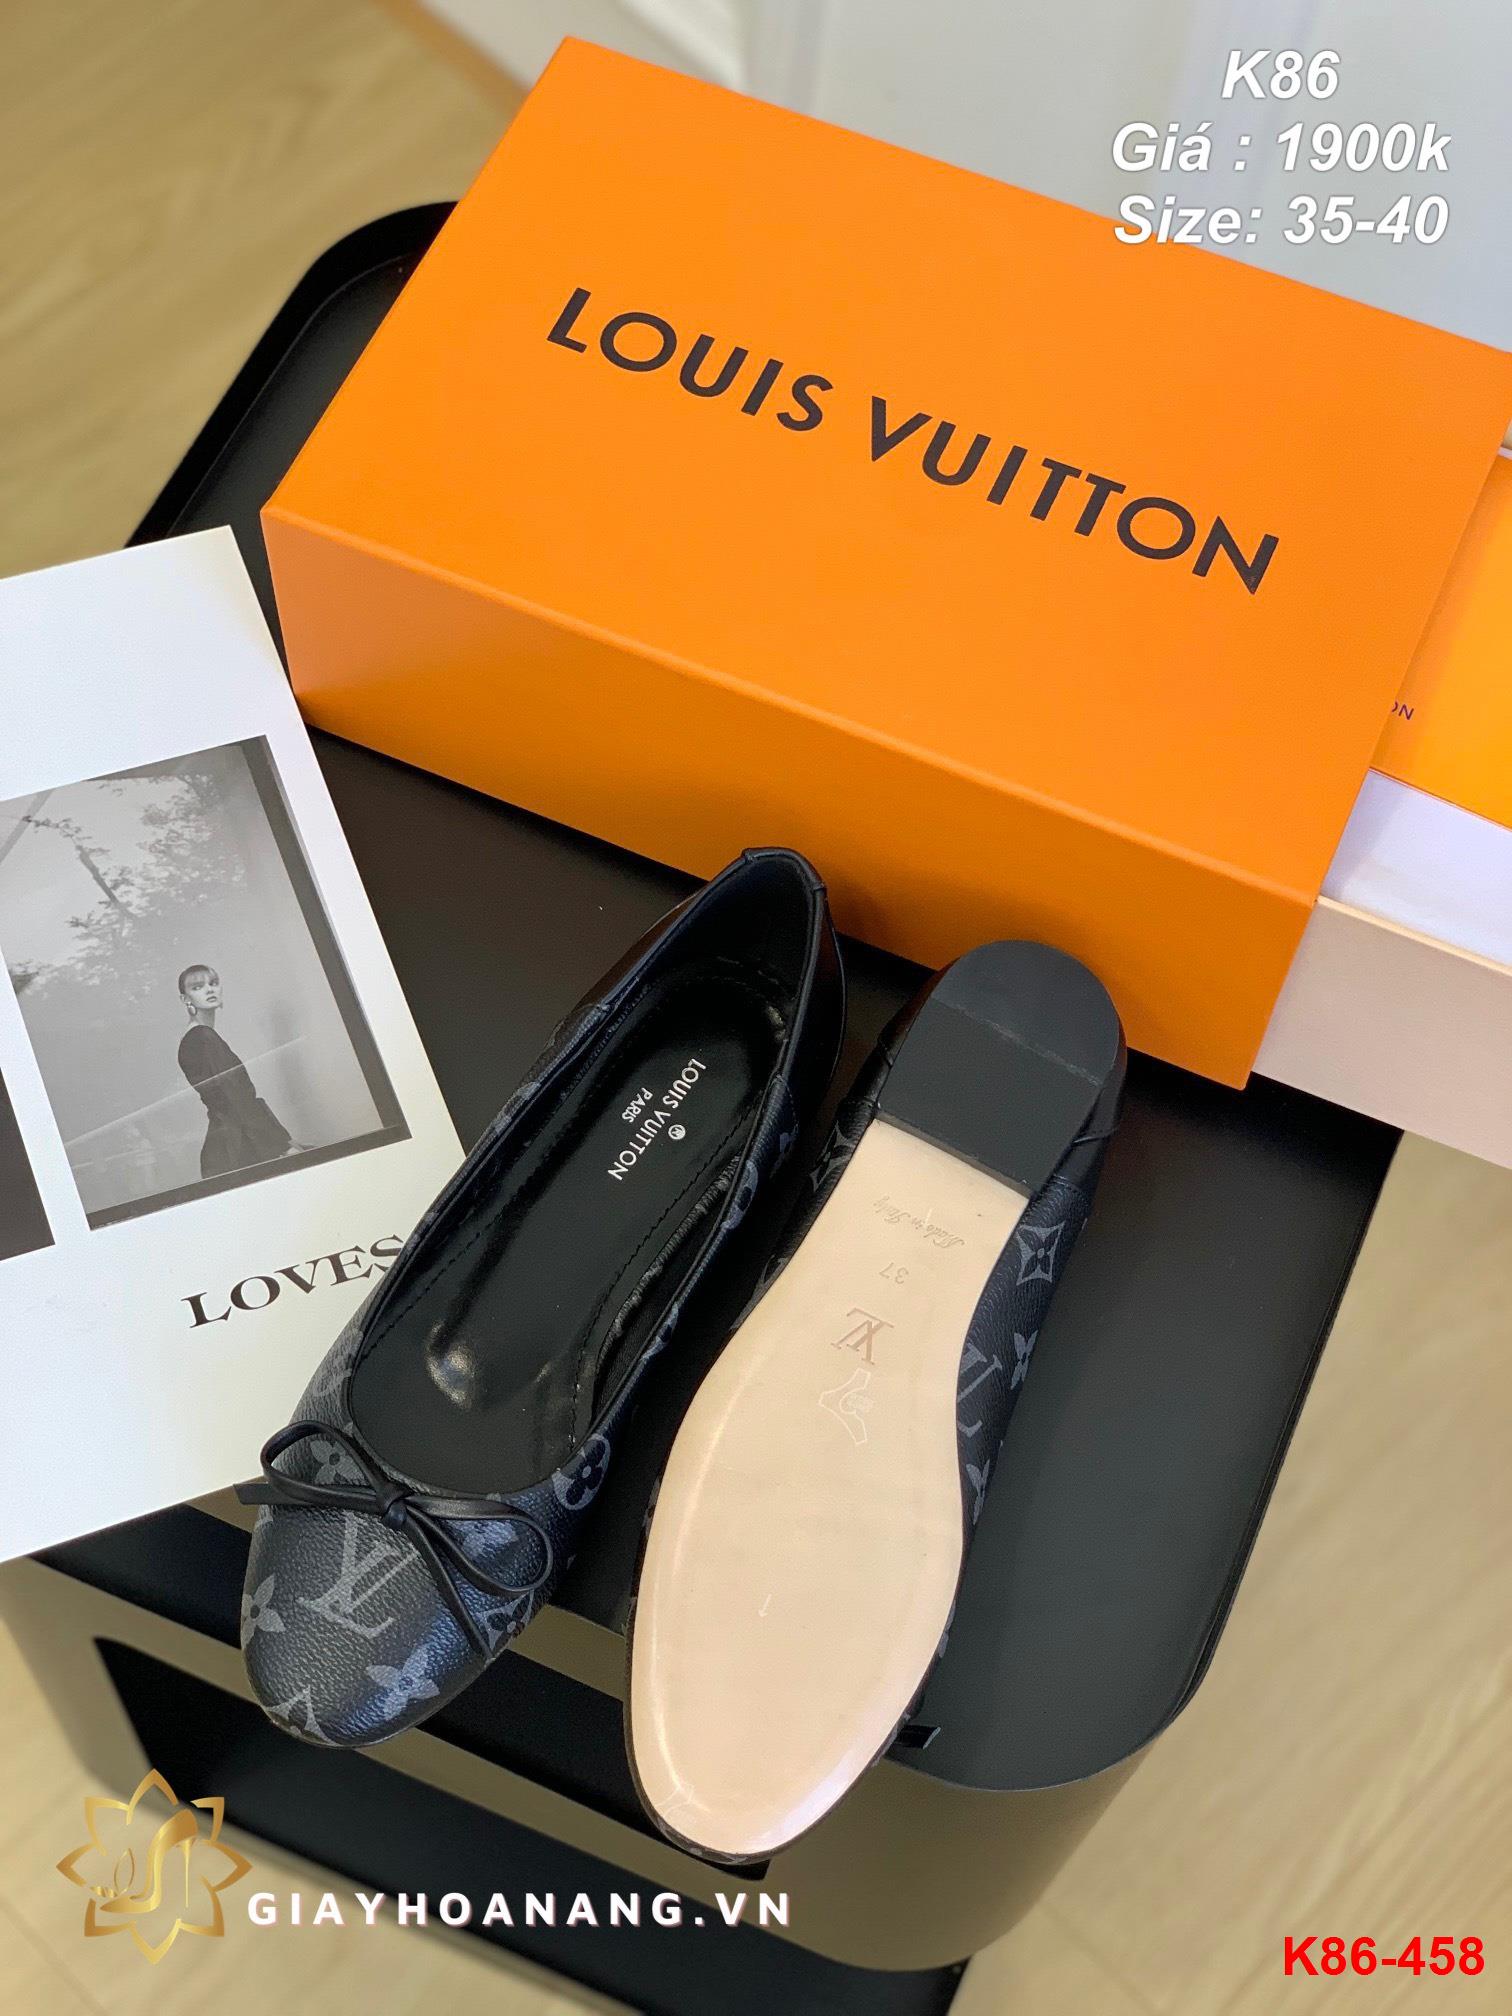 K86-458 Louis Vuitton giày bệt siêu cấp